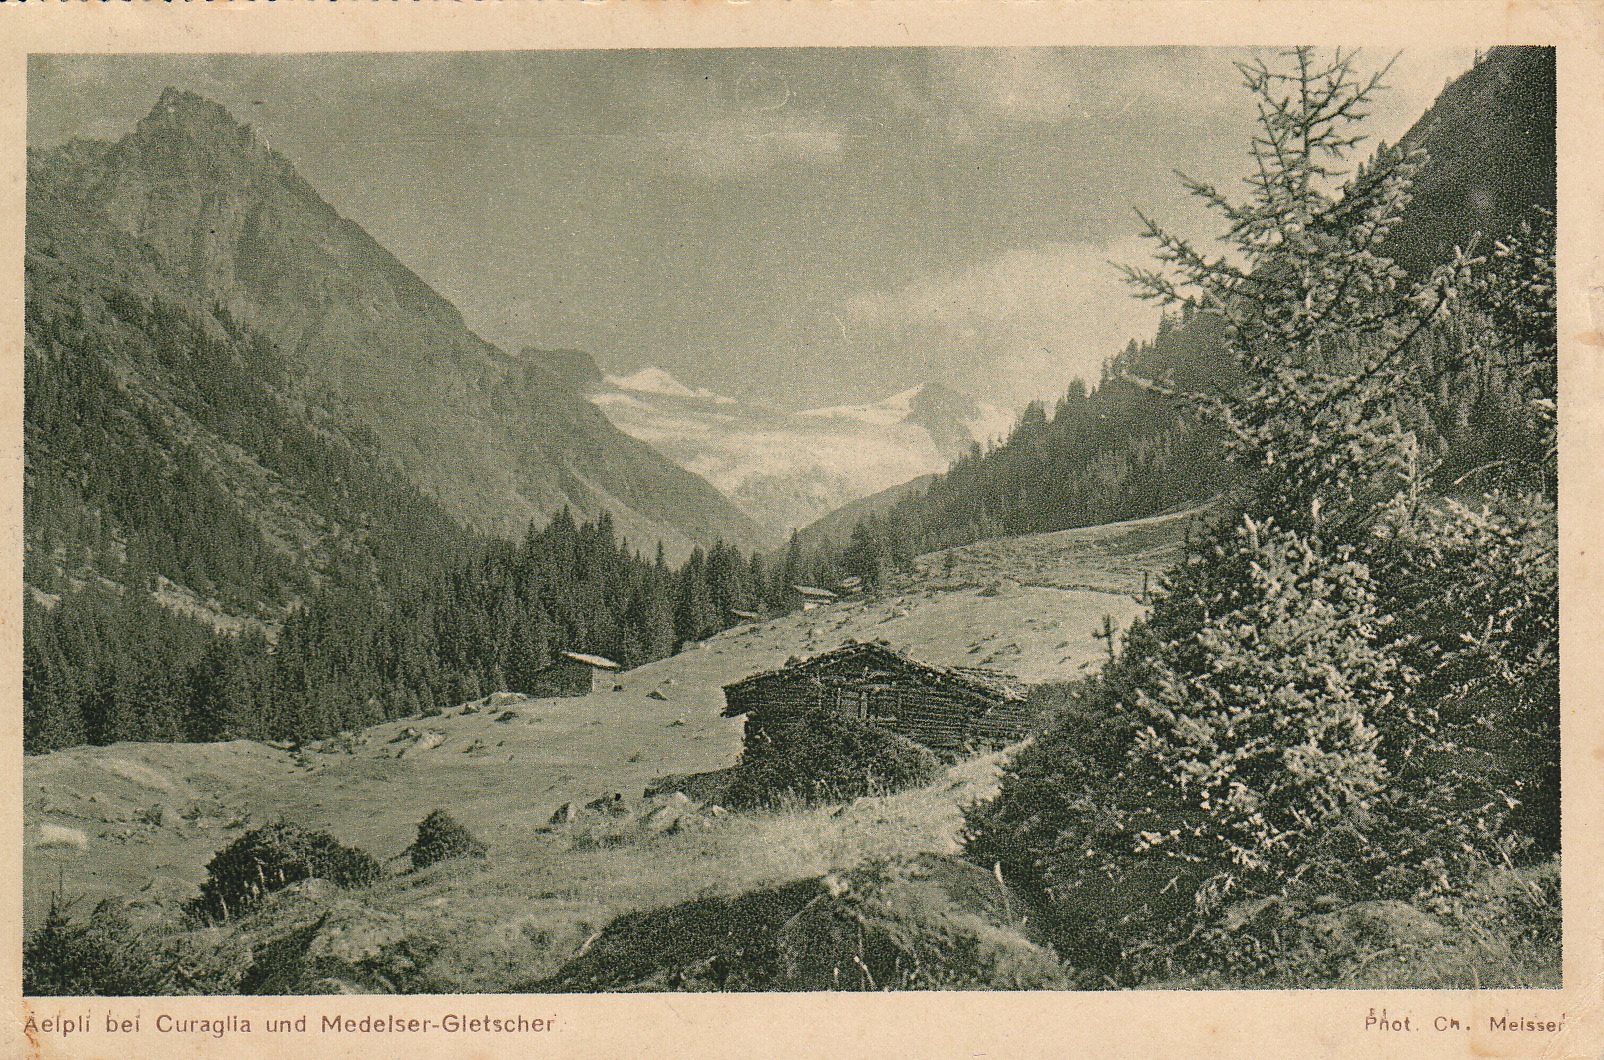 Aelpli bei Curaglia und Medelser-Gletscher